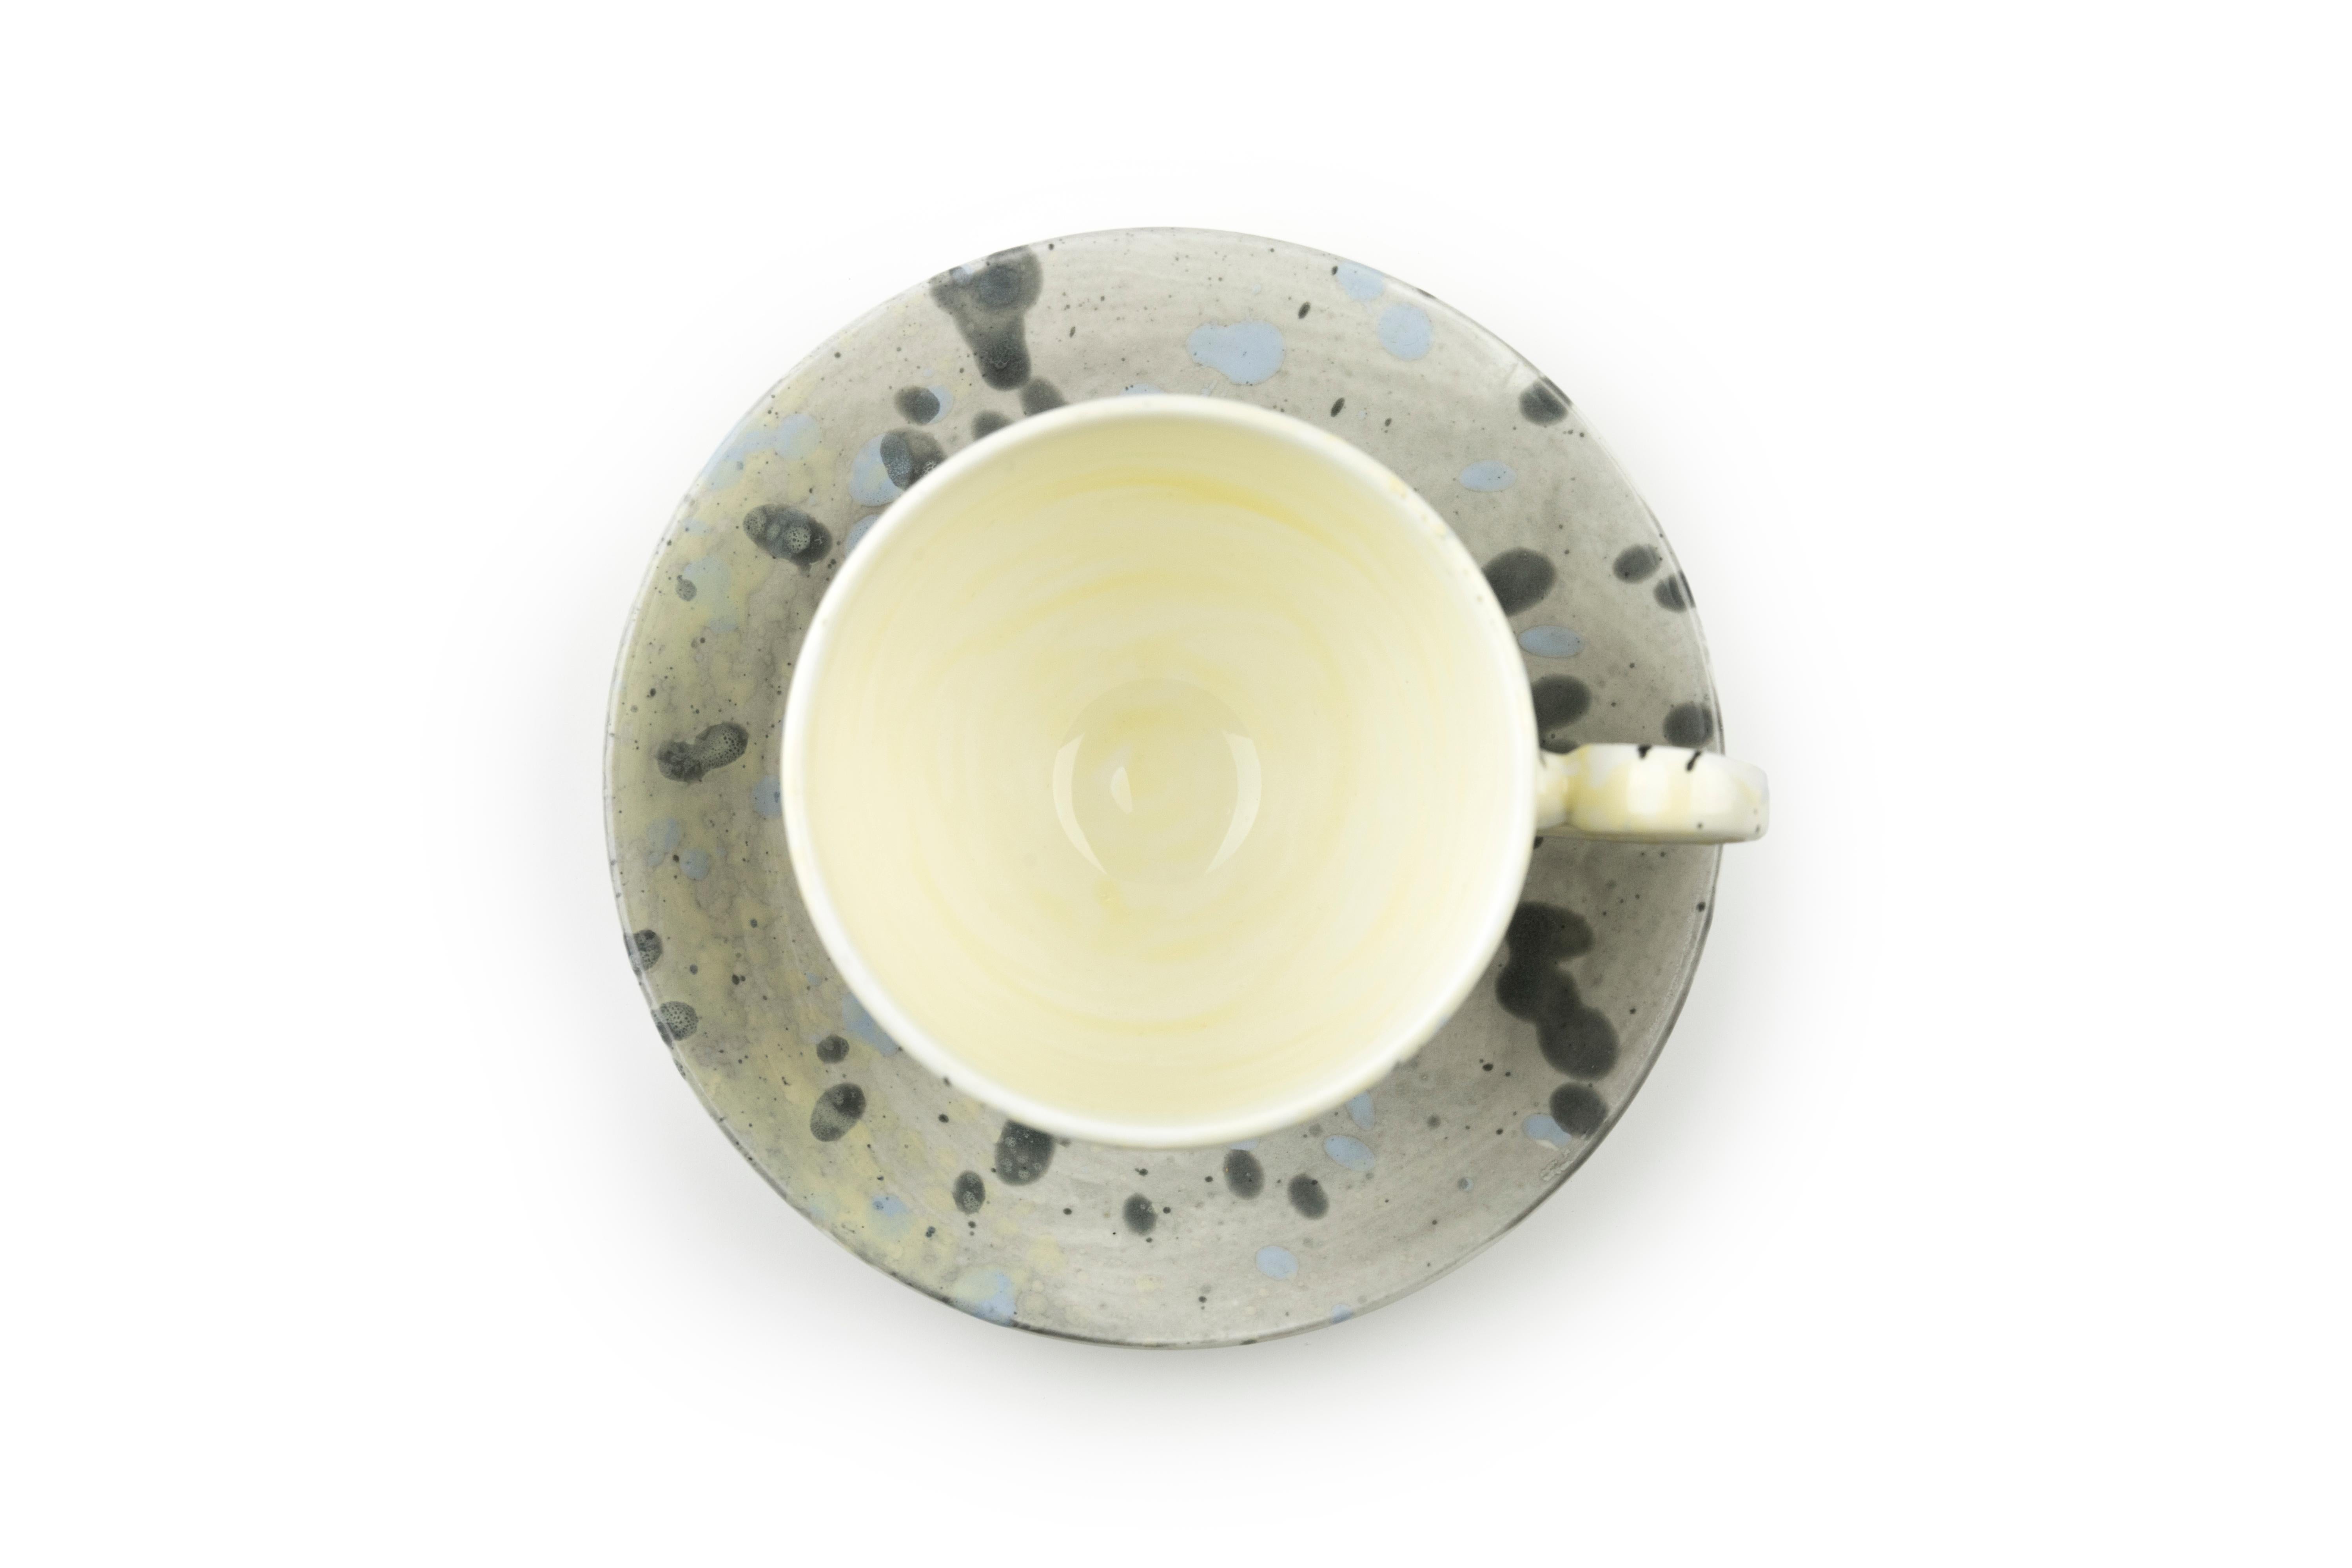 Cette tasse à thé et cette soucoupe sont disponibles dans une variété de couleurs et de finitions à mélanger et à assortir. Lors de l'achat de cet ensemble, veuillez préciser la couleur et la finition de chaque article. 

Options de couleur